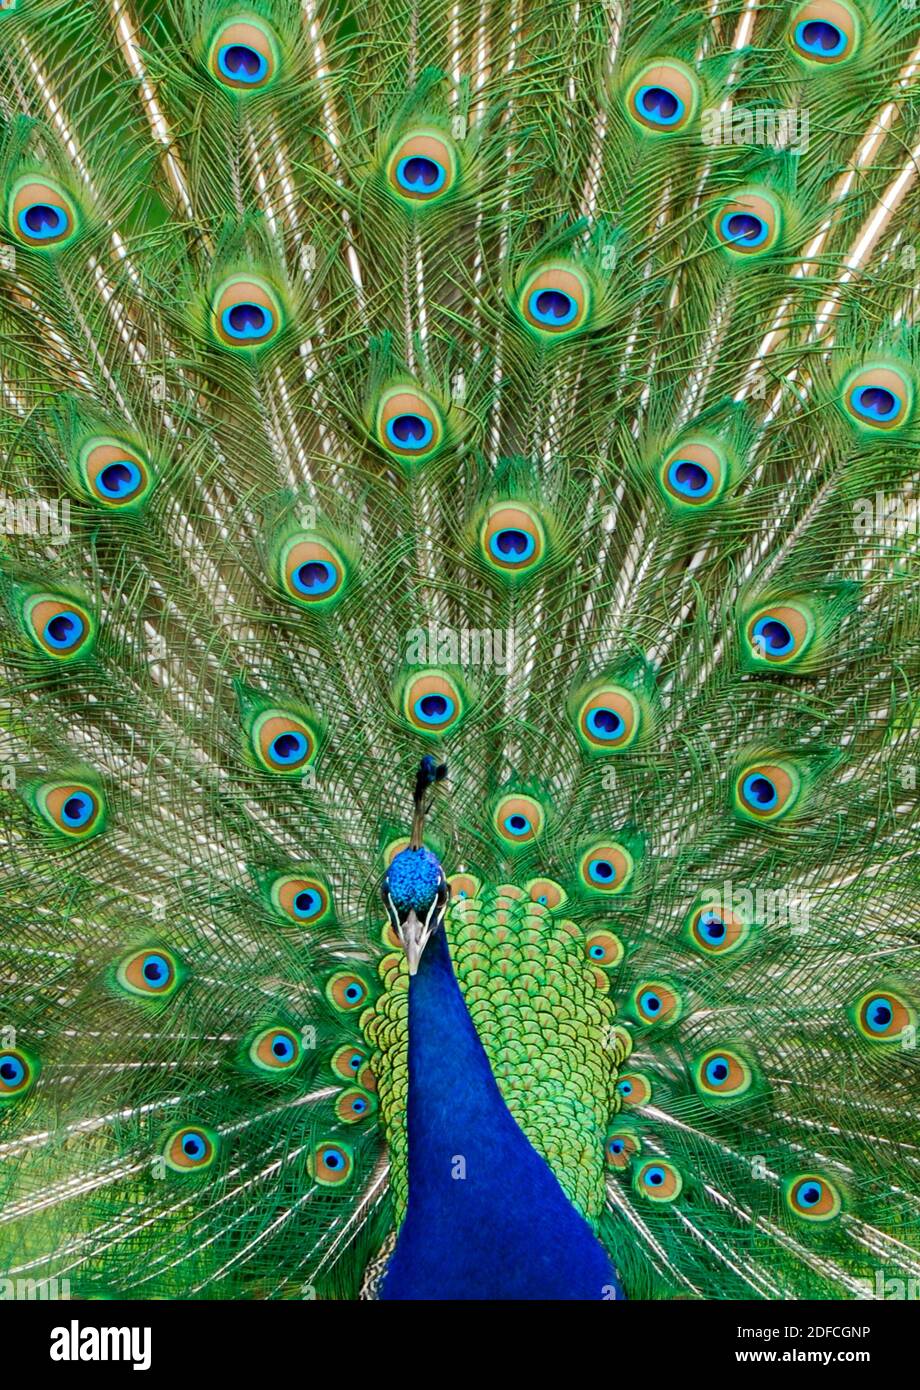 Peacock (Pavo cristatus) résumé Banque D'Images